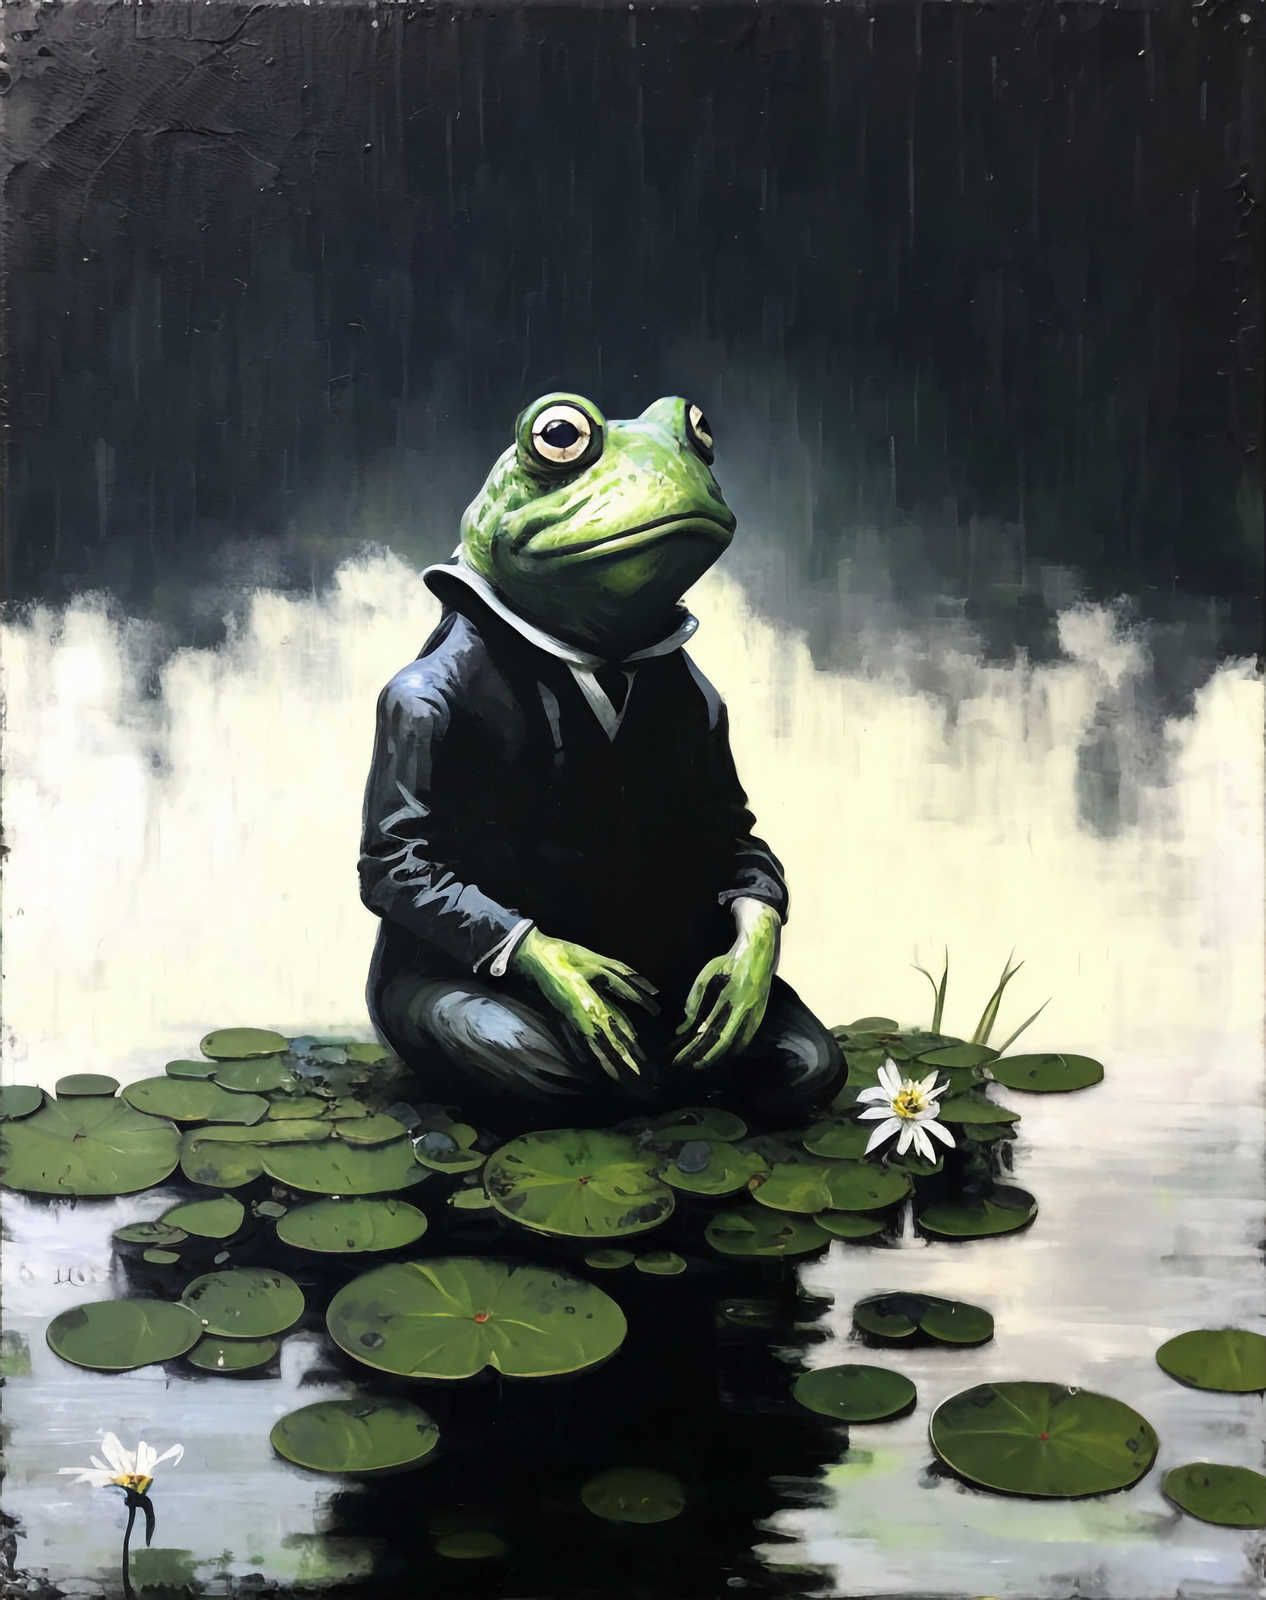             Toile KI »chilling frog« - 60 cm x 90 cm
        